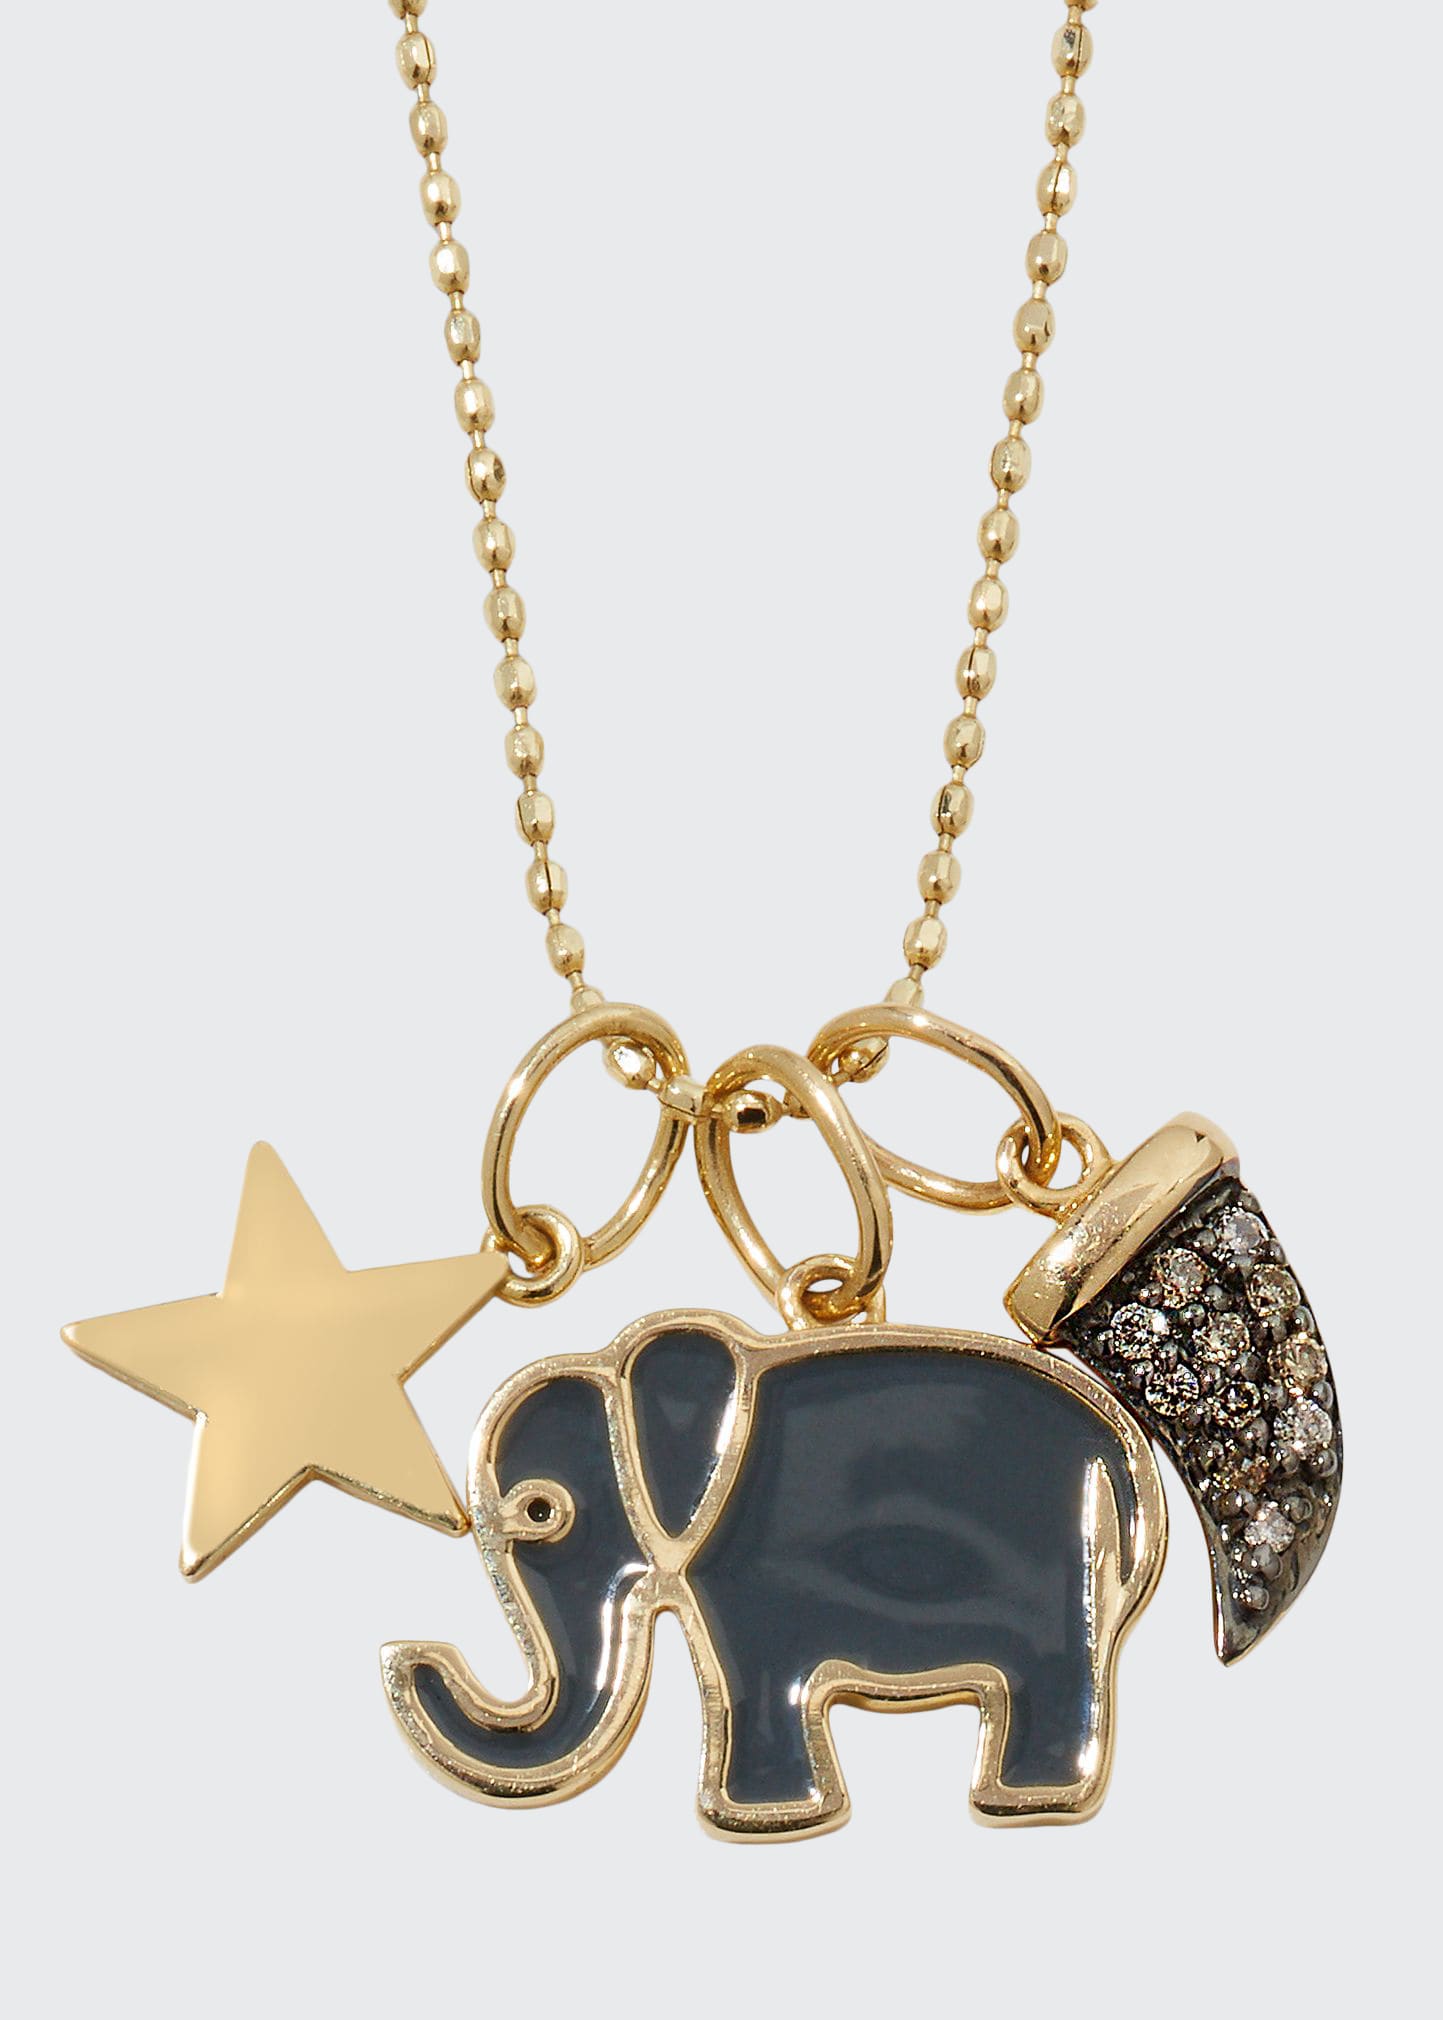 Sydney Evan 14k Enamel & Diamond Elephant Charm Necklace